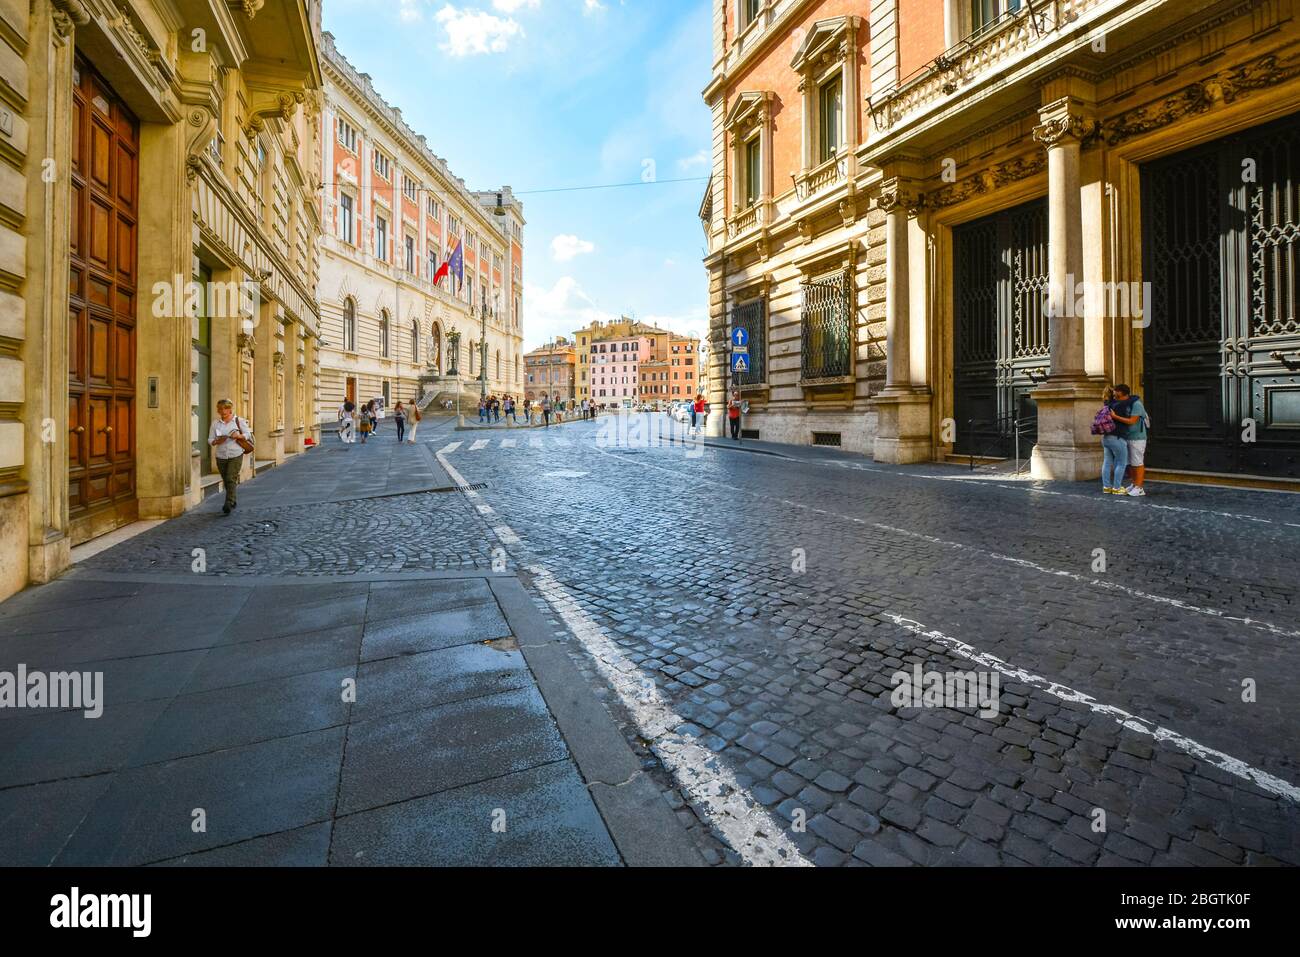 Ein Paar umarmt den Bürgersteig, während Touristen und Einheimische entlang einer breiten, leeren Straße in der Nähe der Piazza Navona in Rom Italien gehen Stockfoto